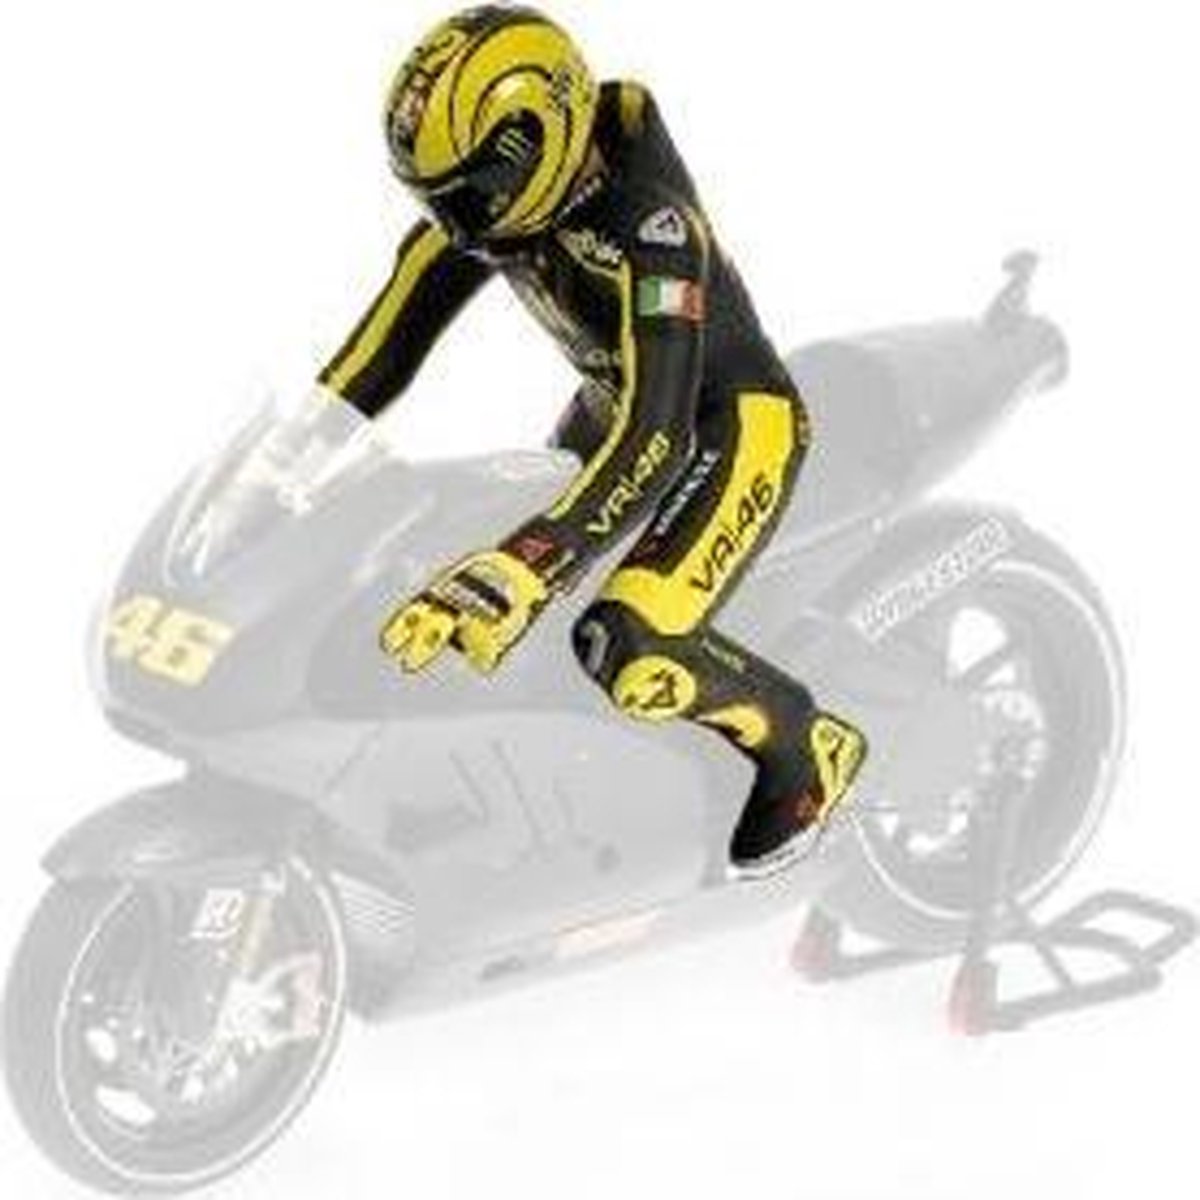 Valentino Rossi figurine Ducati 2011